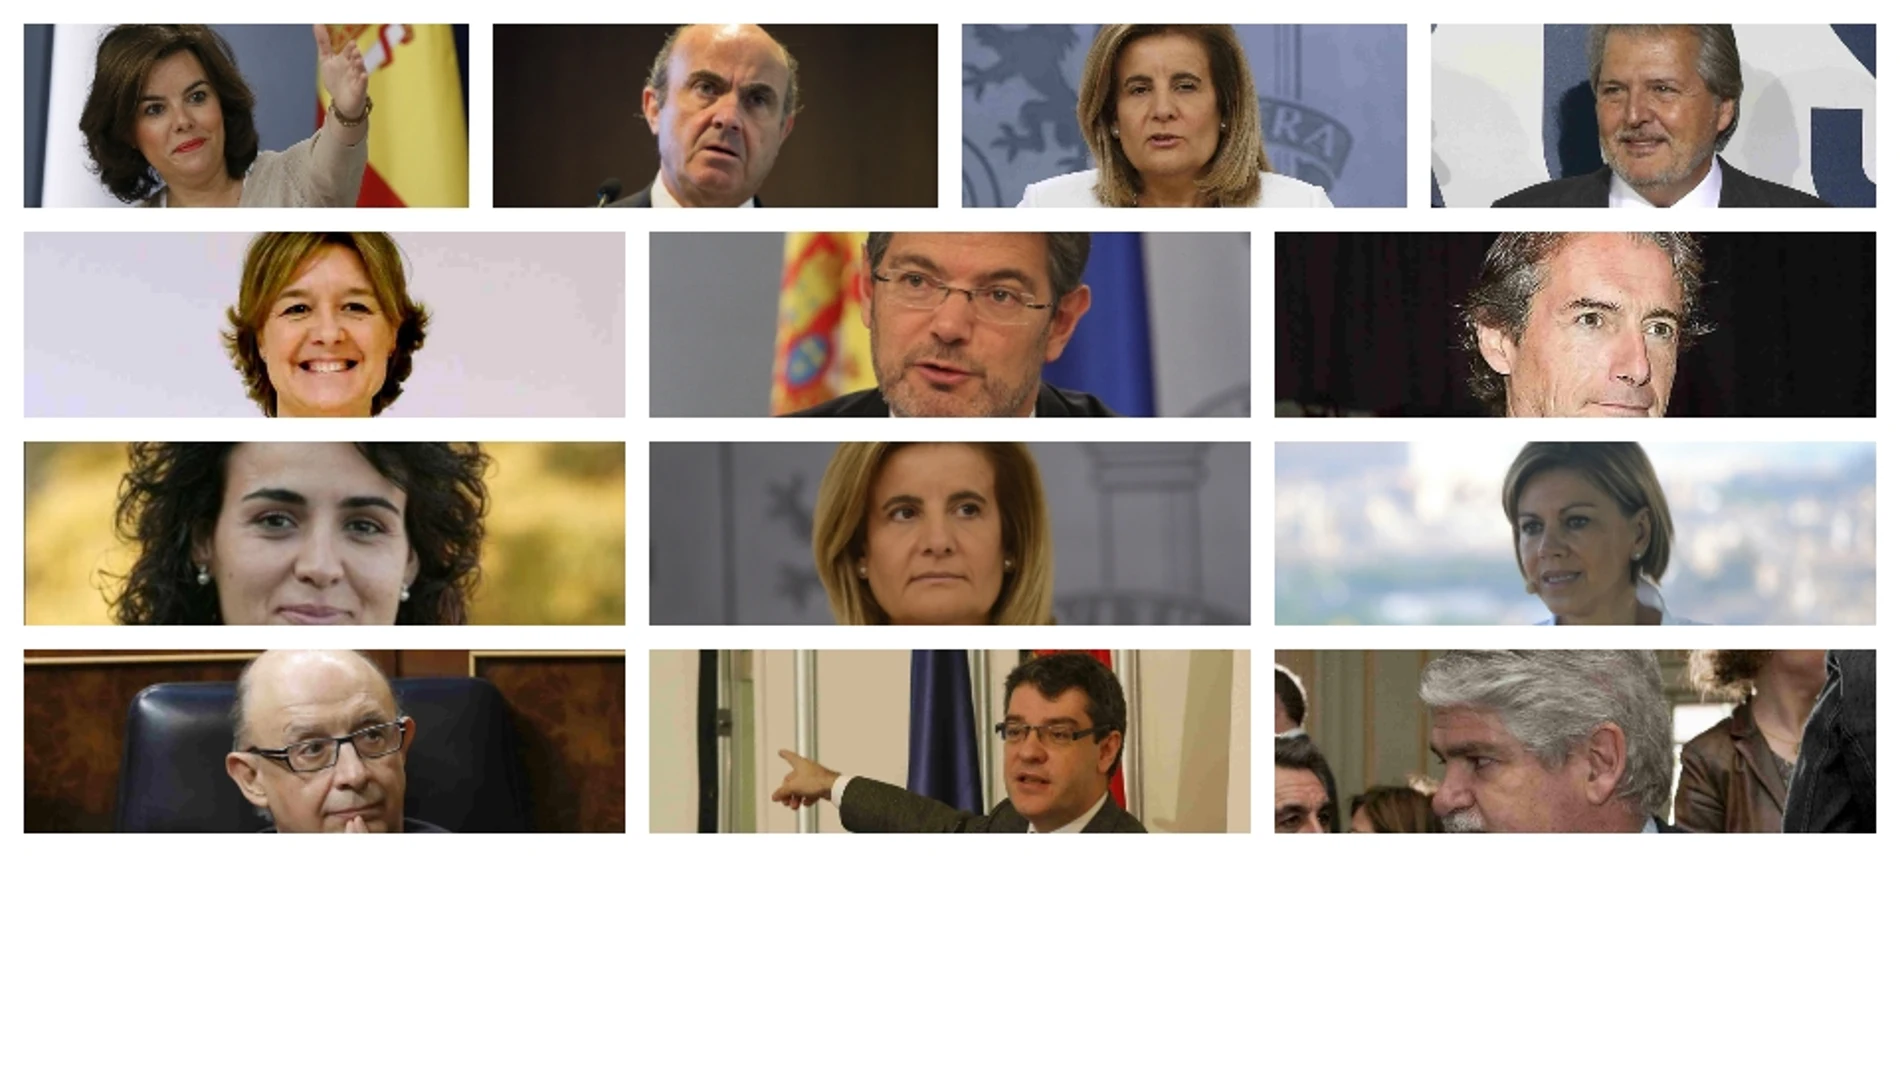 Éstos son los 13 ministros del nuevo Gobierno de Rajoy